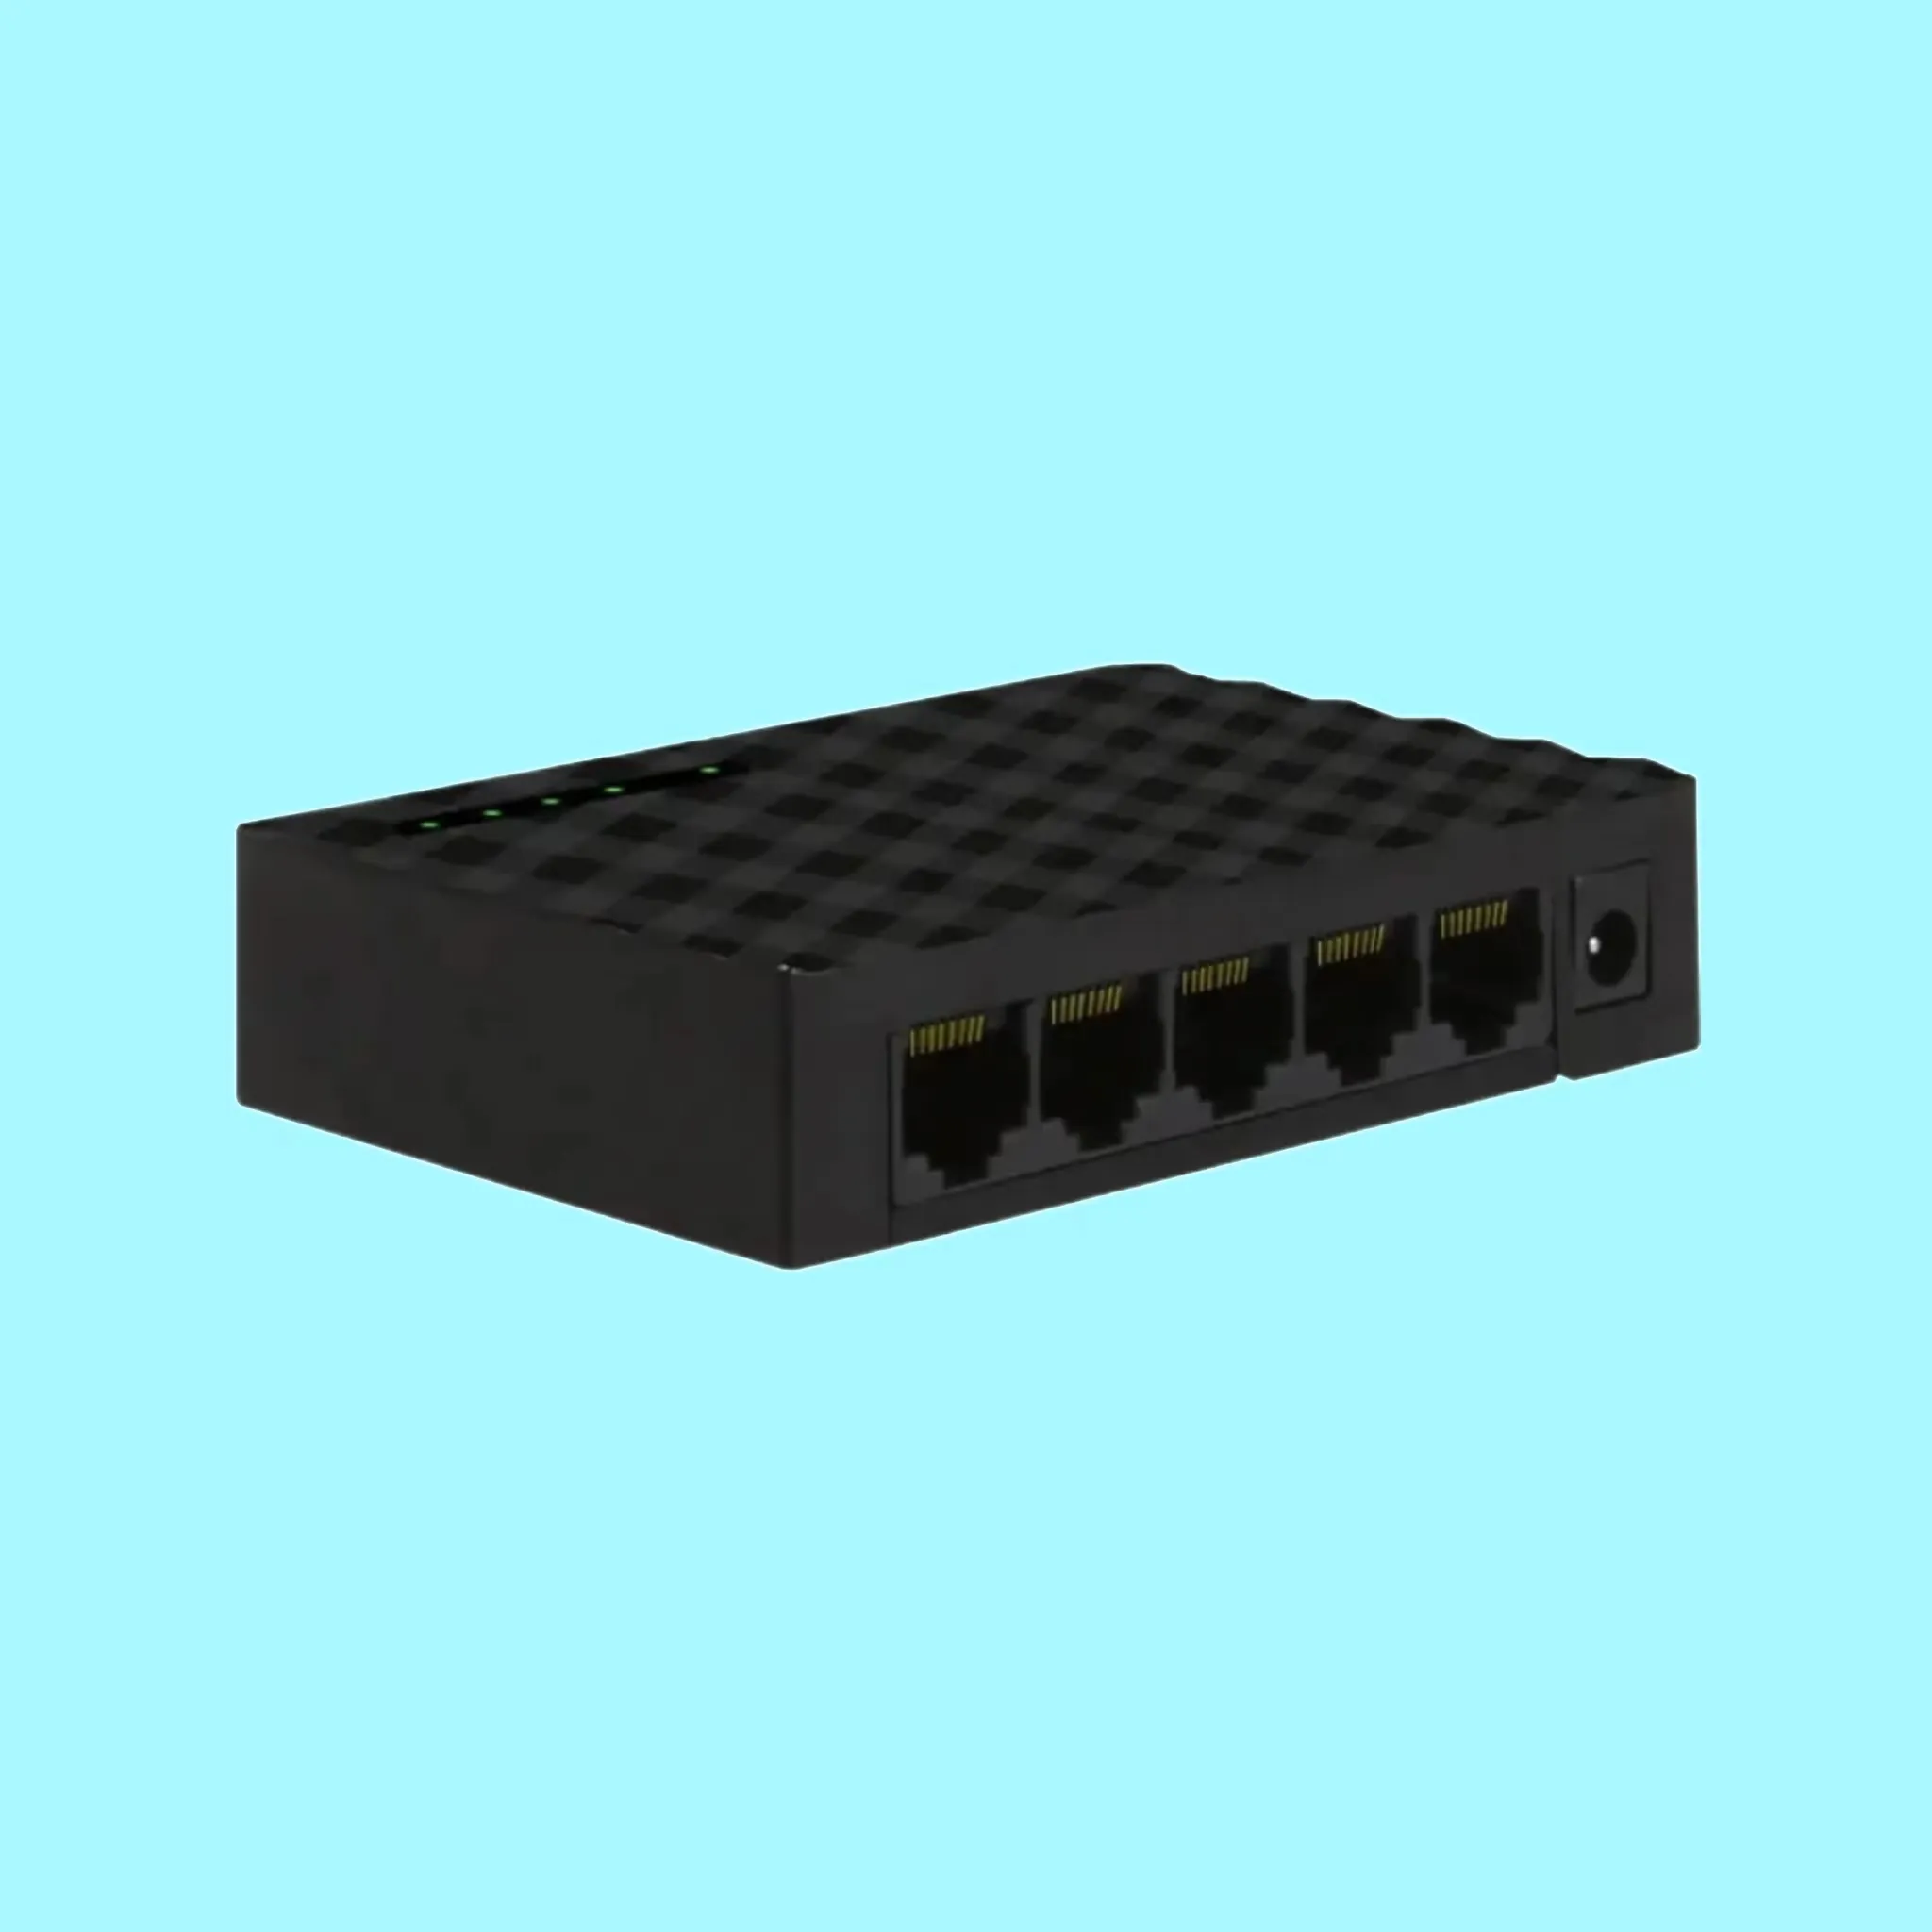 Huastlink Nieuw Ontwerp Poe 5 Poorten Gigabit Ethernet Switch Netwerkswitches 1000Pcs Bestelling Bieden Gratis Monster